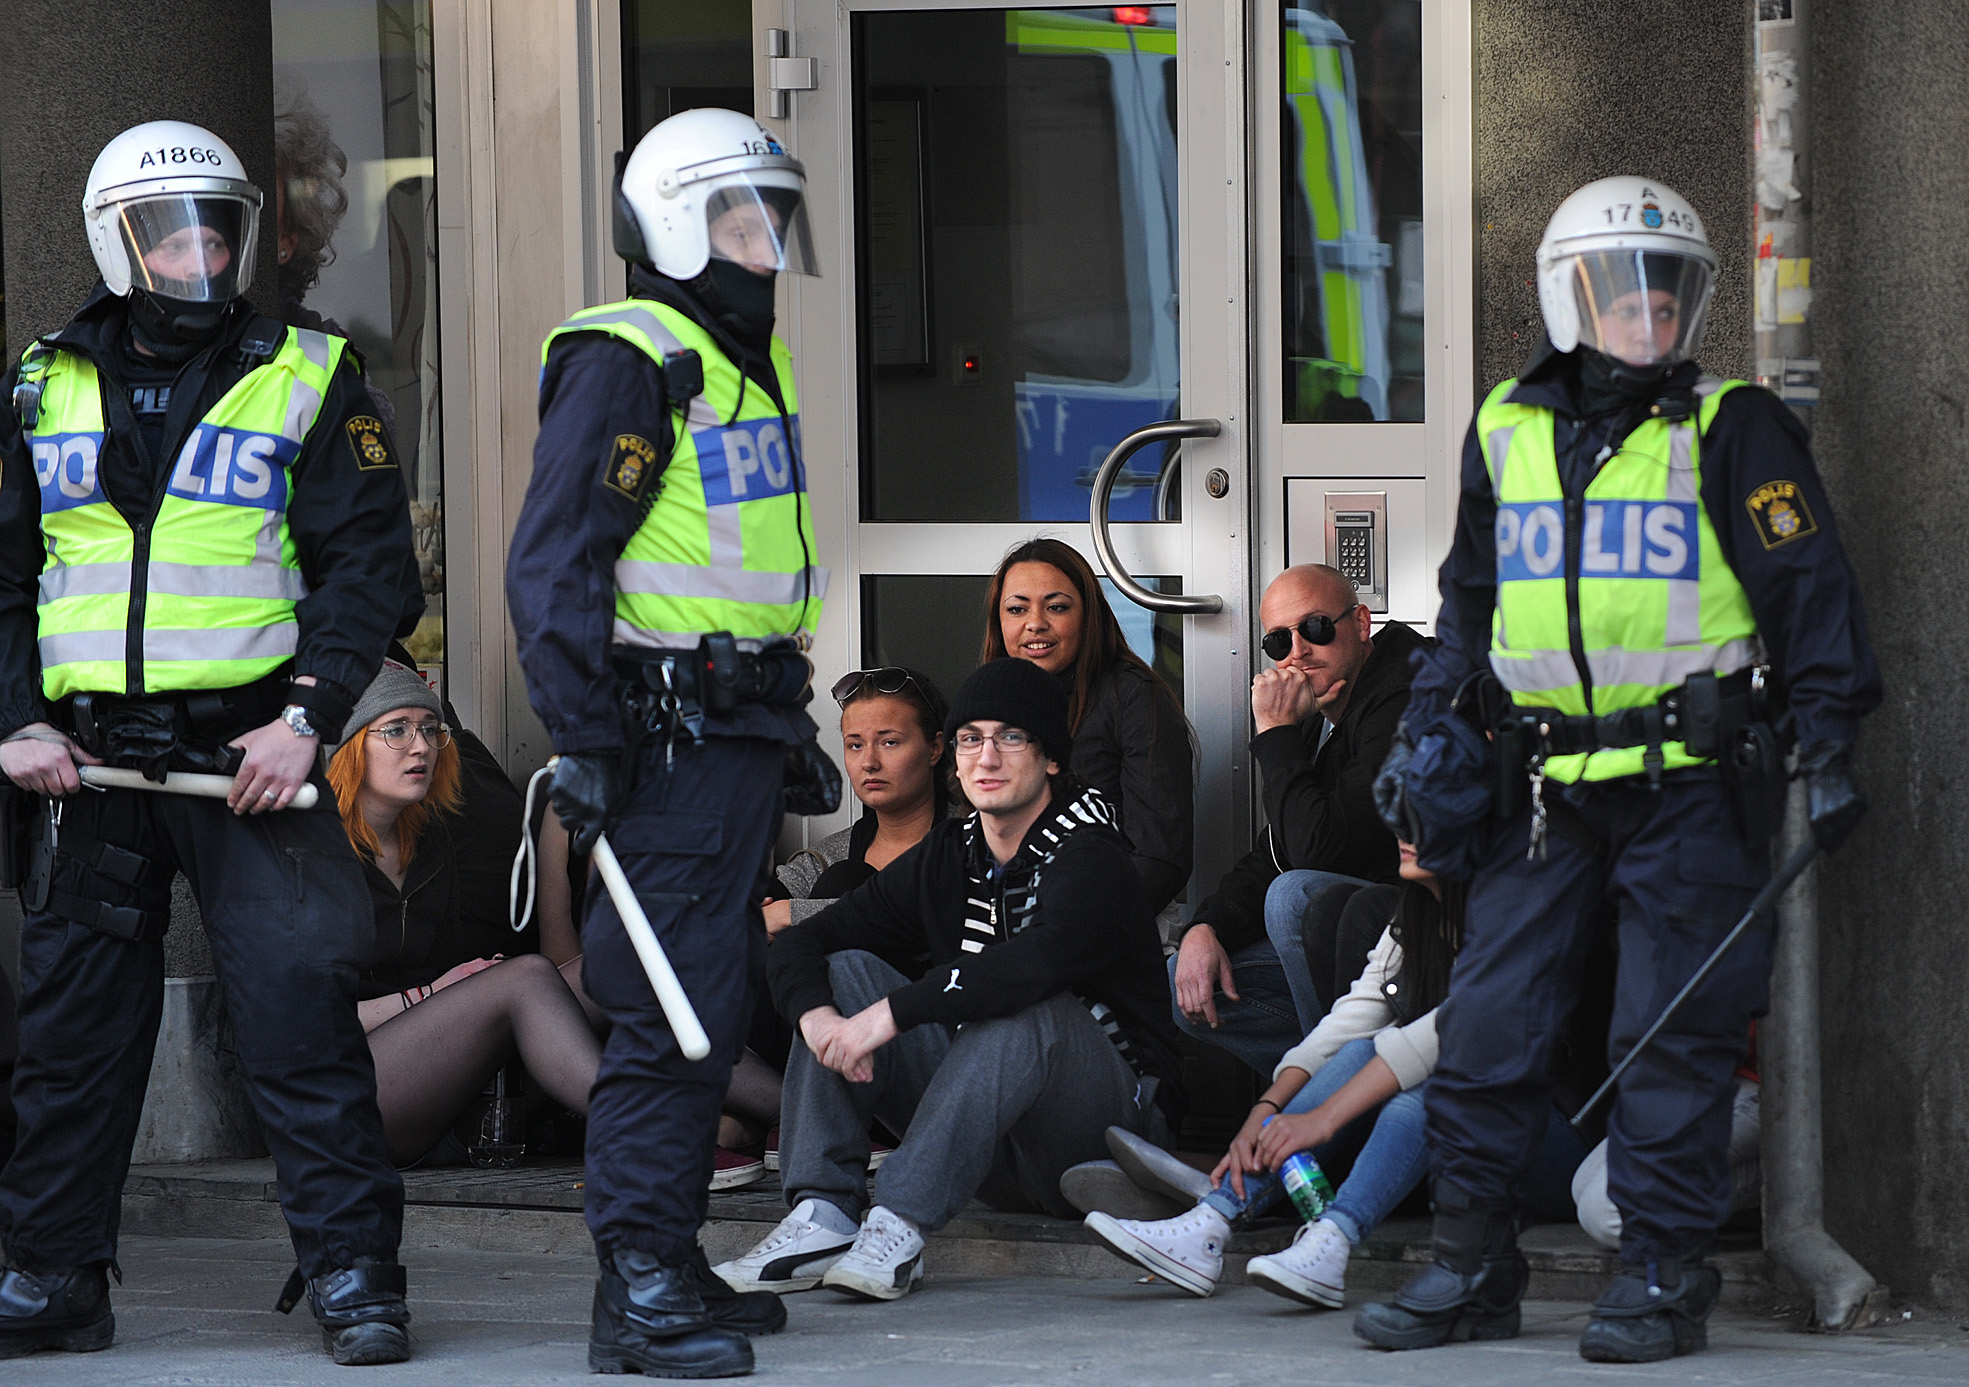 För tillfället utspelar sig ett upplopp utanför en gymnasieskola i Göteborg. Bilden har inget med händelsen att göra. 